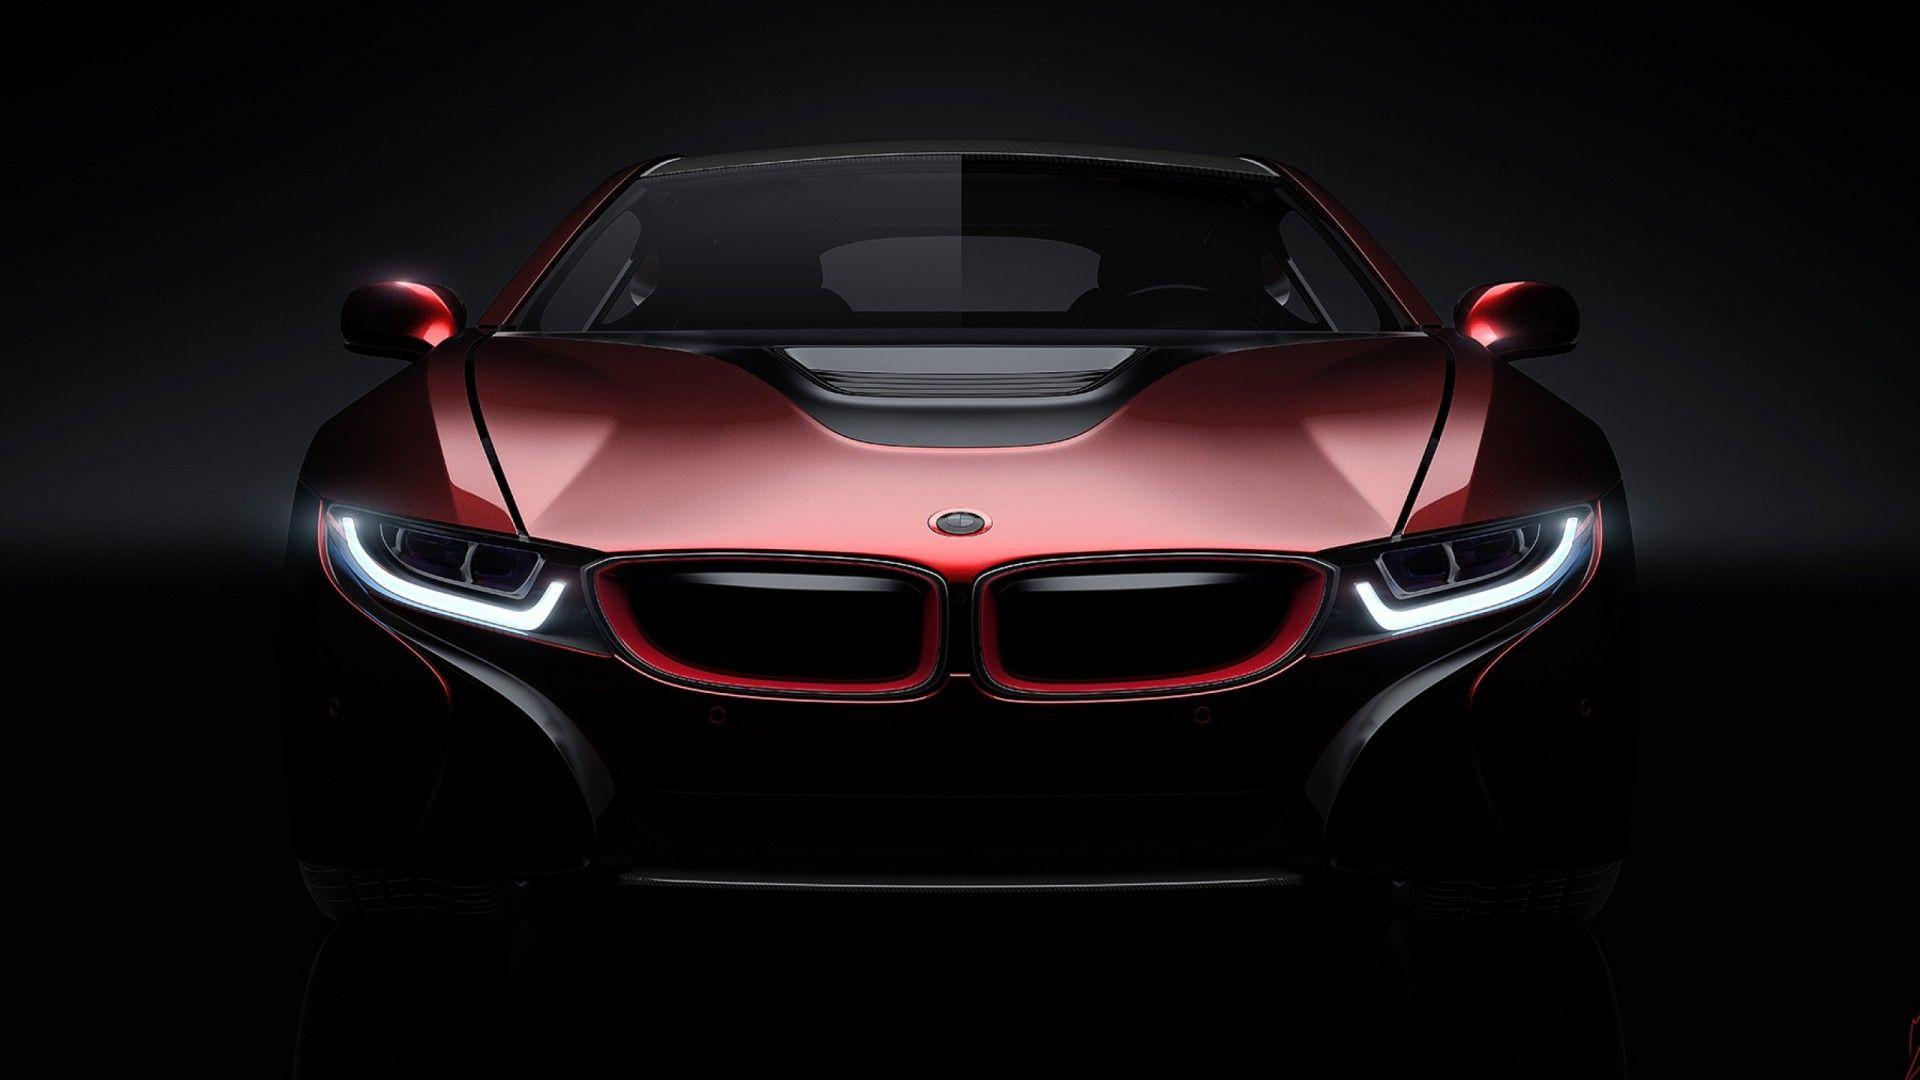 BMW i8 Wallpaper HD Of Concept Car For Desktop & Mobile